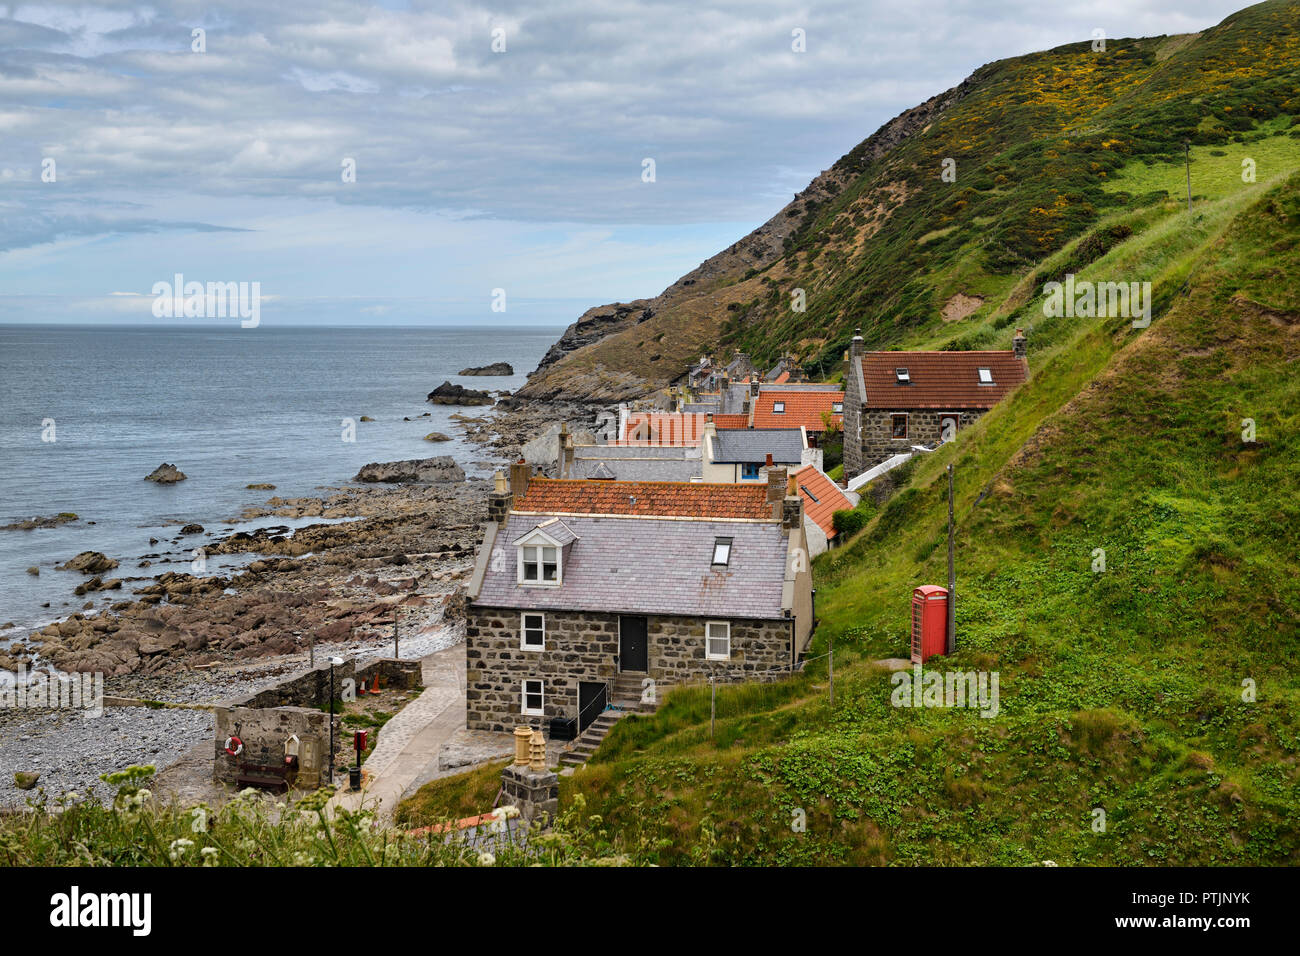 Simple rangée de maisons de village de pêche côtière Crovie sur Gamrie Bay Mer du Nord l'Aberdeenshire Ecosse UK avec boîte de téléphone rouge Banque D'Images